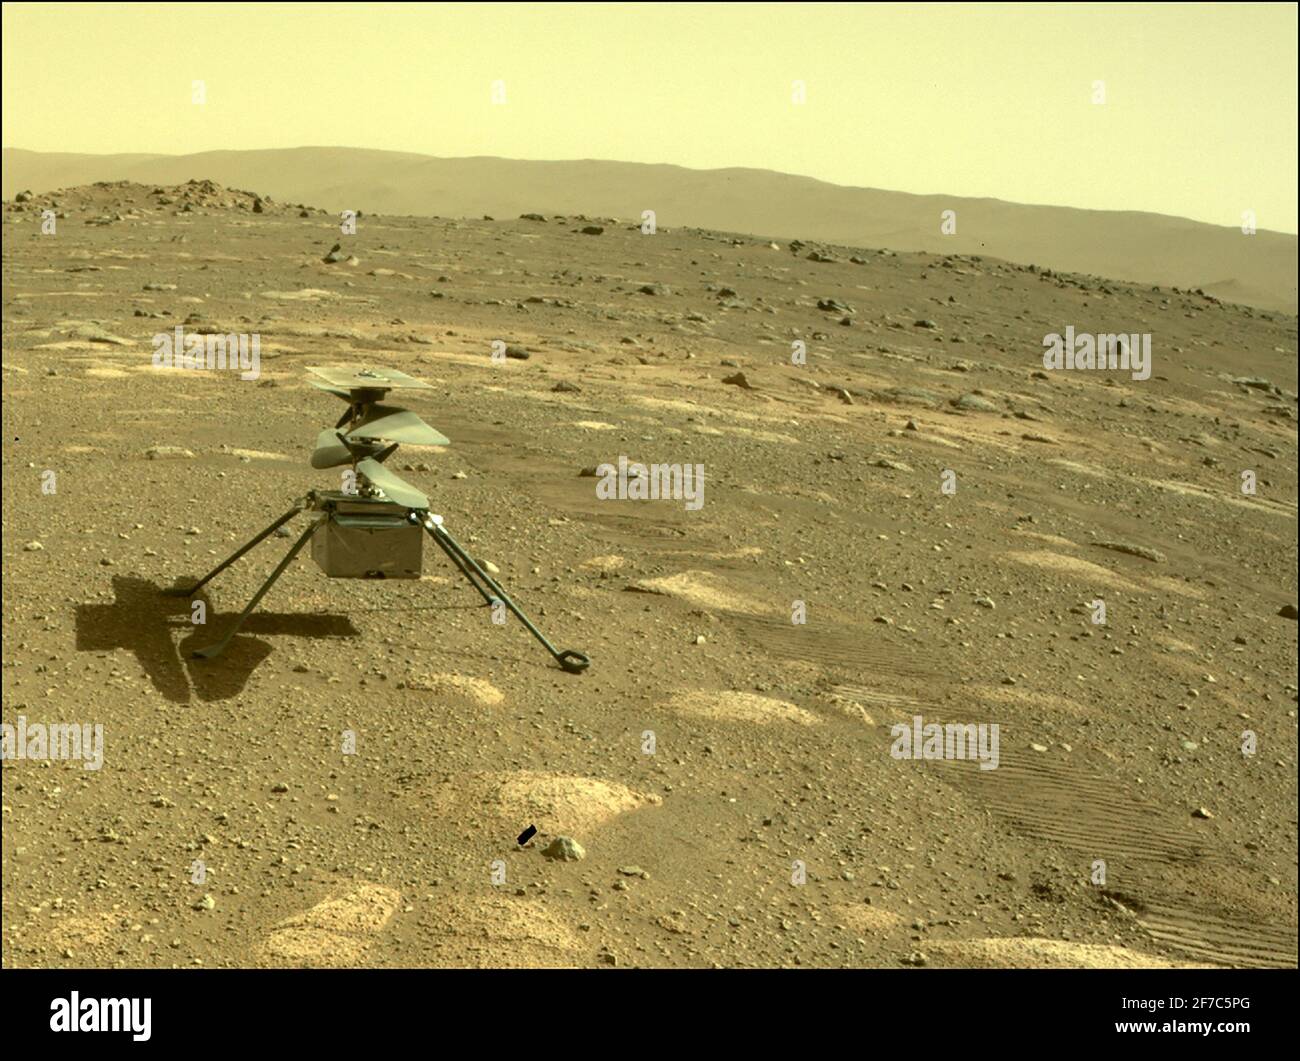 Handout- l'elicottero Ingenuity della NASA può essere visto su Marte come visto dalla telecamera posteriore di pericolo della perseveranza rover il 4 aprile 2021, il 44° giorno marziano, o sol della missione. Handout Foto di JPL-Caltech/NASA via ABACAPRESS.COM Foto Stock